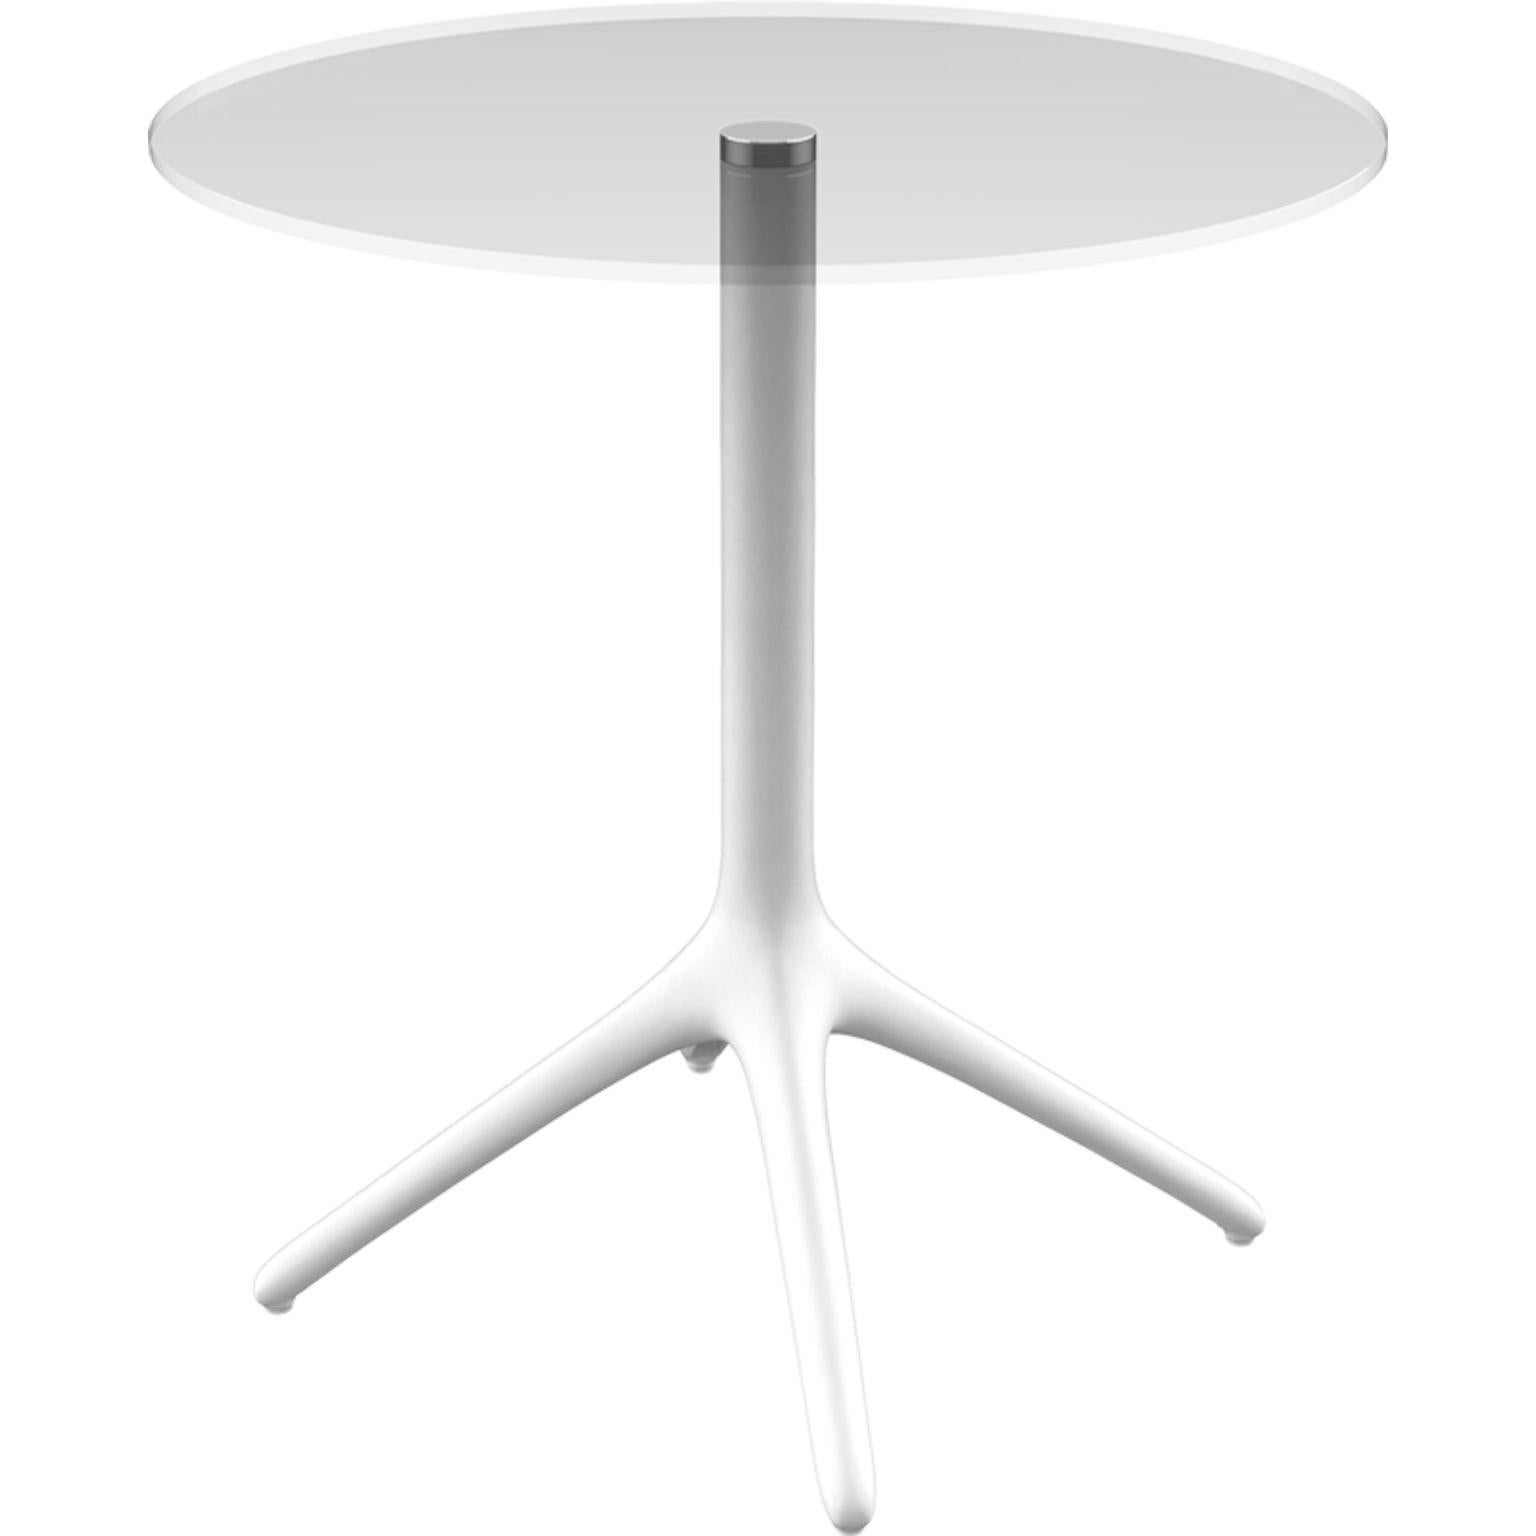 Table 73 blanche de Whiting par Mowee.
Dimensions : P45,5 x H73 cm.
Matériau : Aluminium, verre trempé.
Poids : 5,5 kg.
Disponible également en différentes couleurs et finitions. Version pliable disponible. 

Une table conçue pour être la plus